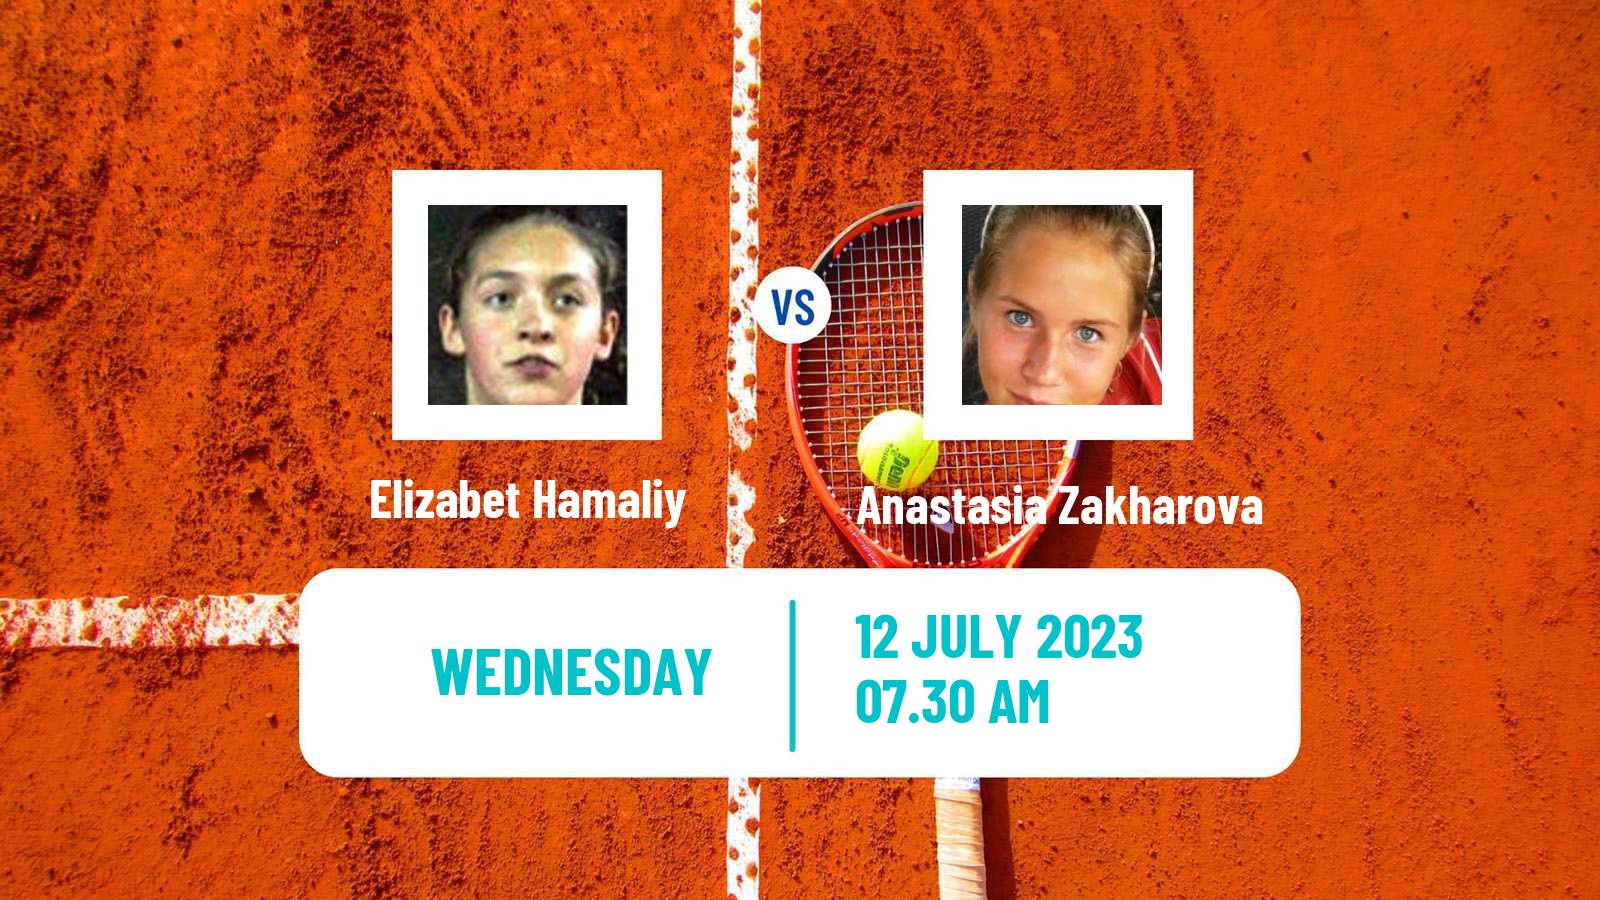 Tennis ITF W25 Corroios Seixal Women Elizabet Hamaliy - Anastasia Zakharova